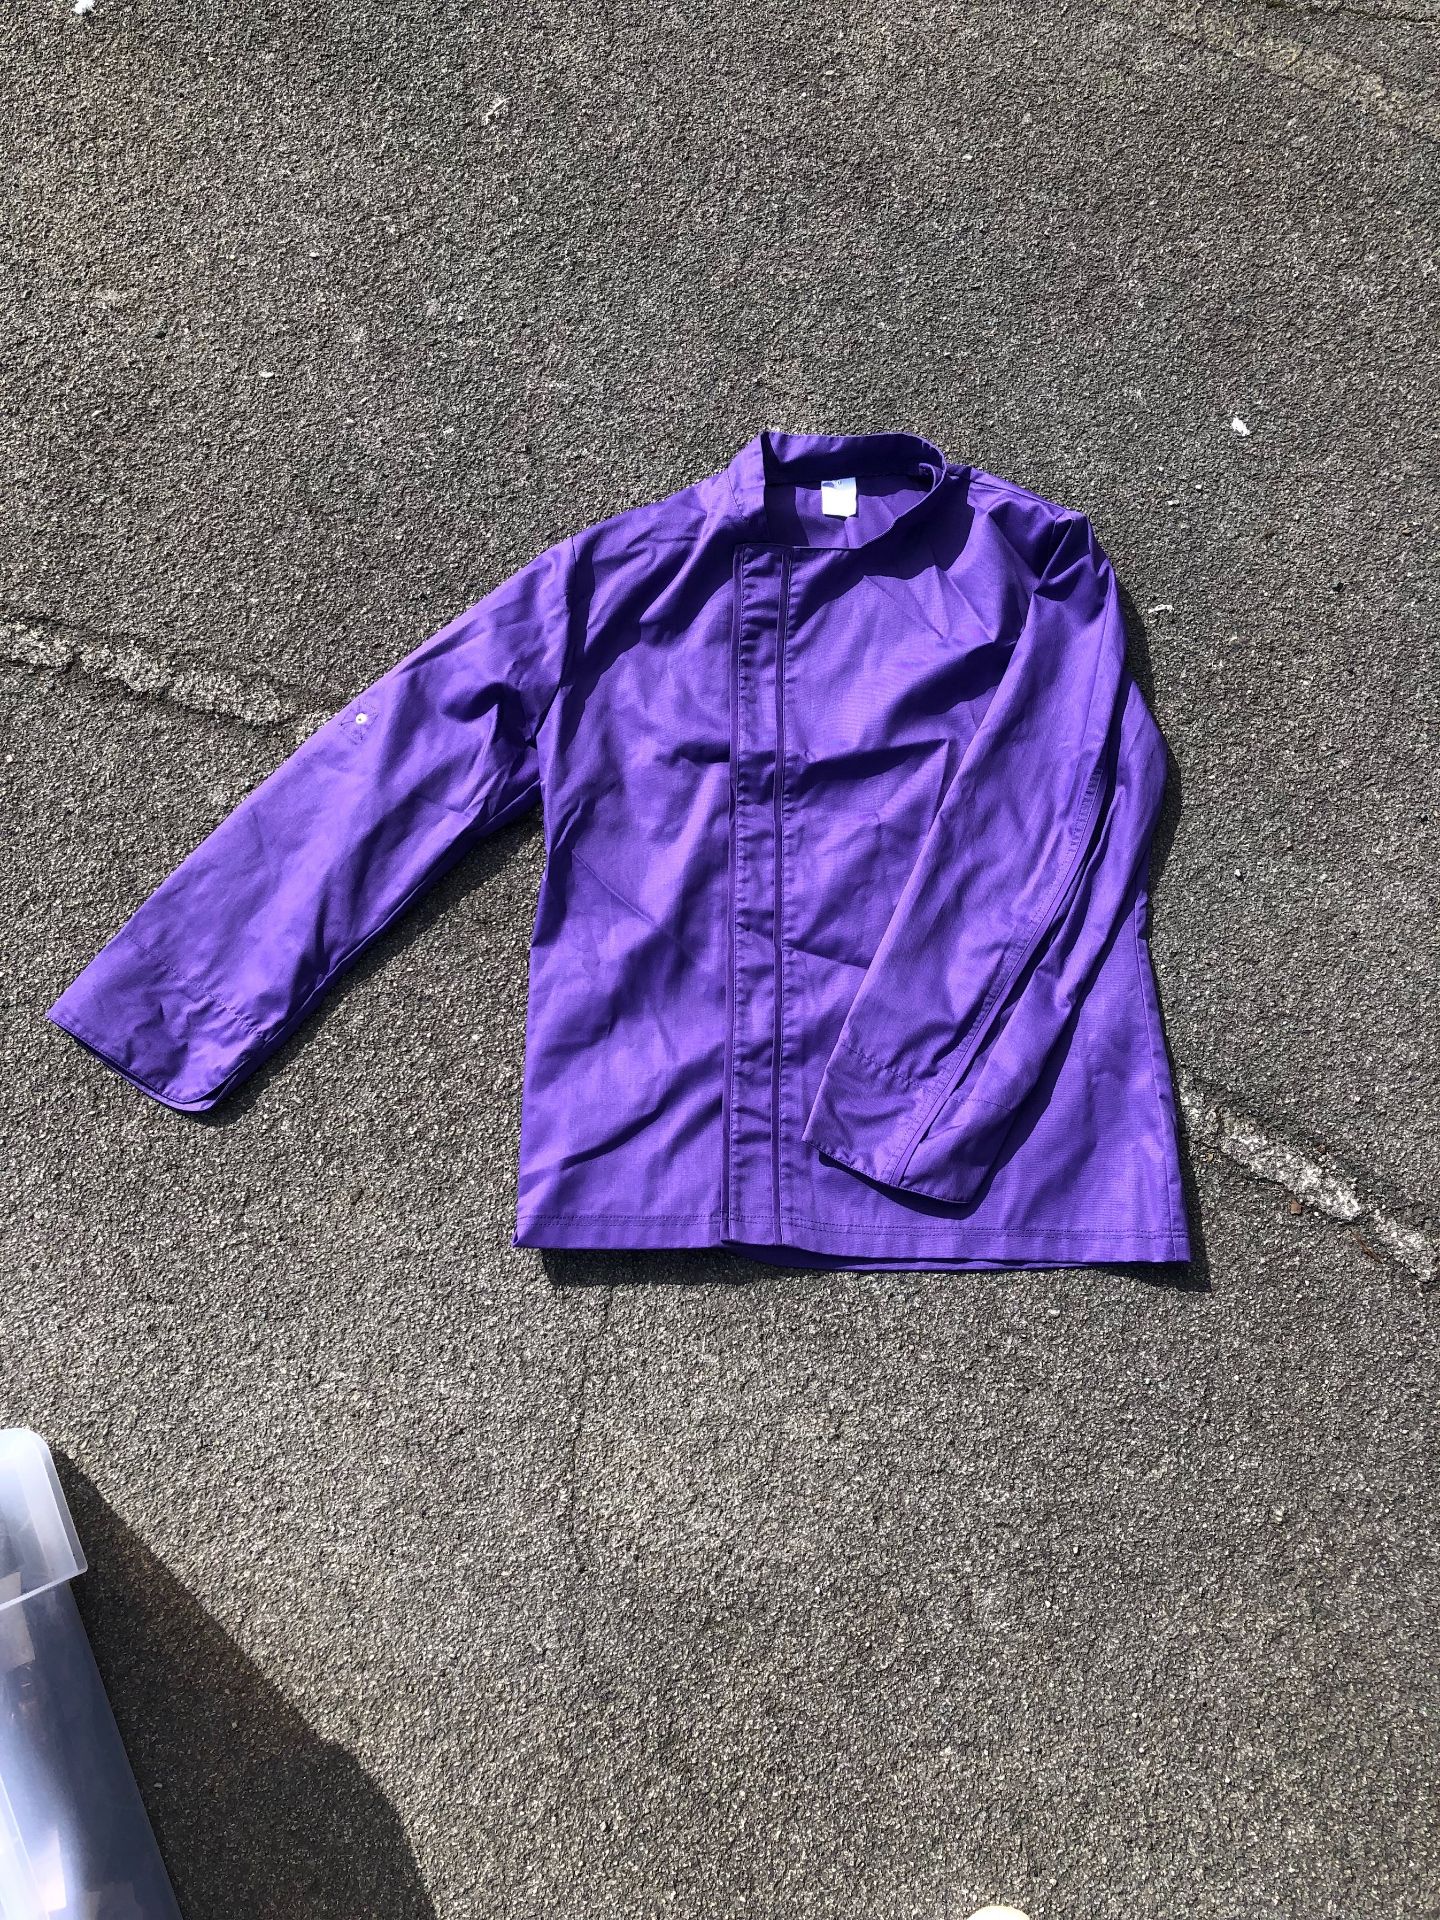 Brand new long sleeve chef jacket -EXTRA LARGE x 7 Purple long sleeve- brand new, never worn. High